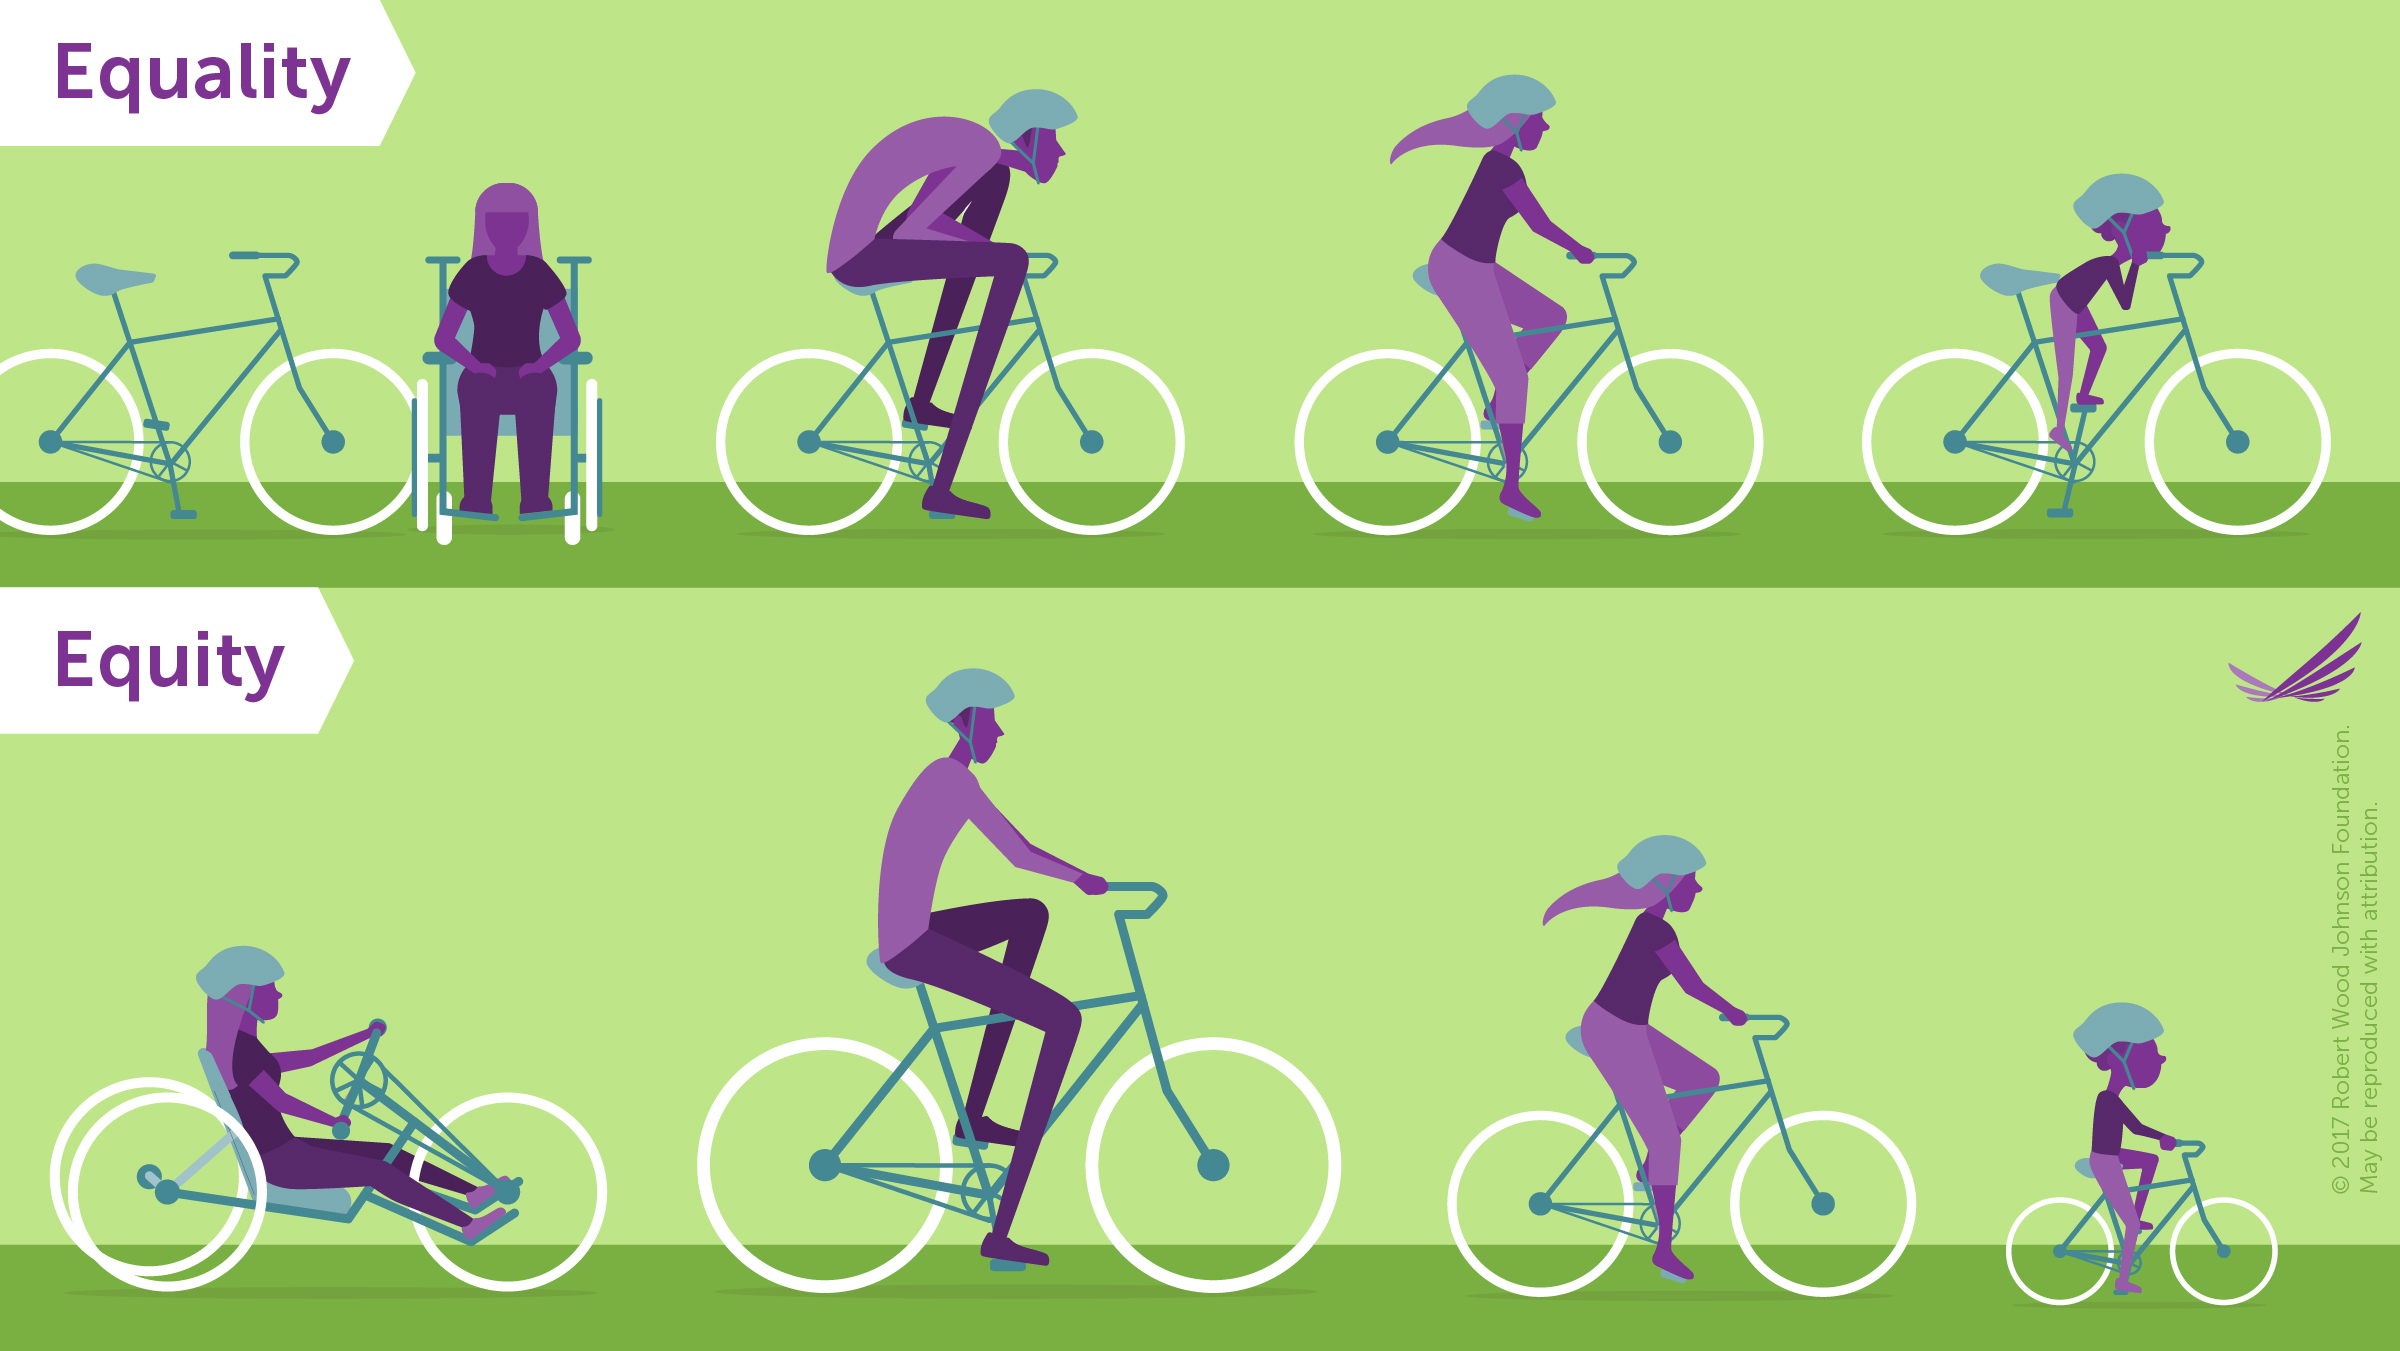 Bild von Fahrrädern, das den Unterschied zwischen Gerechtigkeit und Gleichheit zeigt